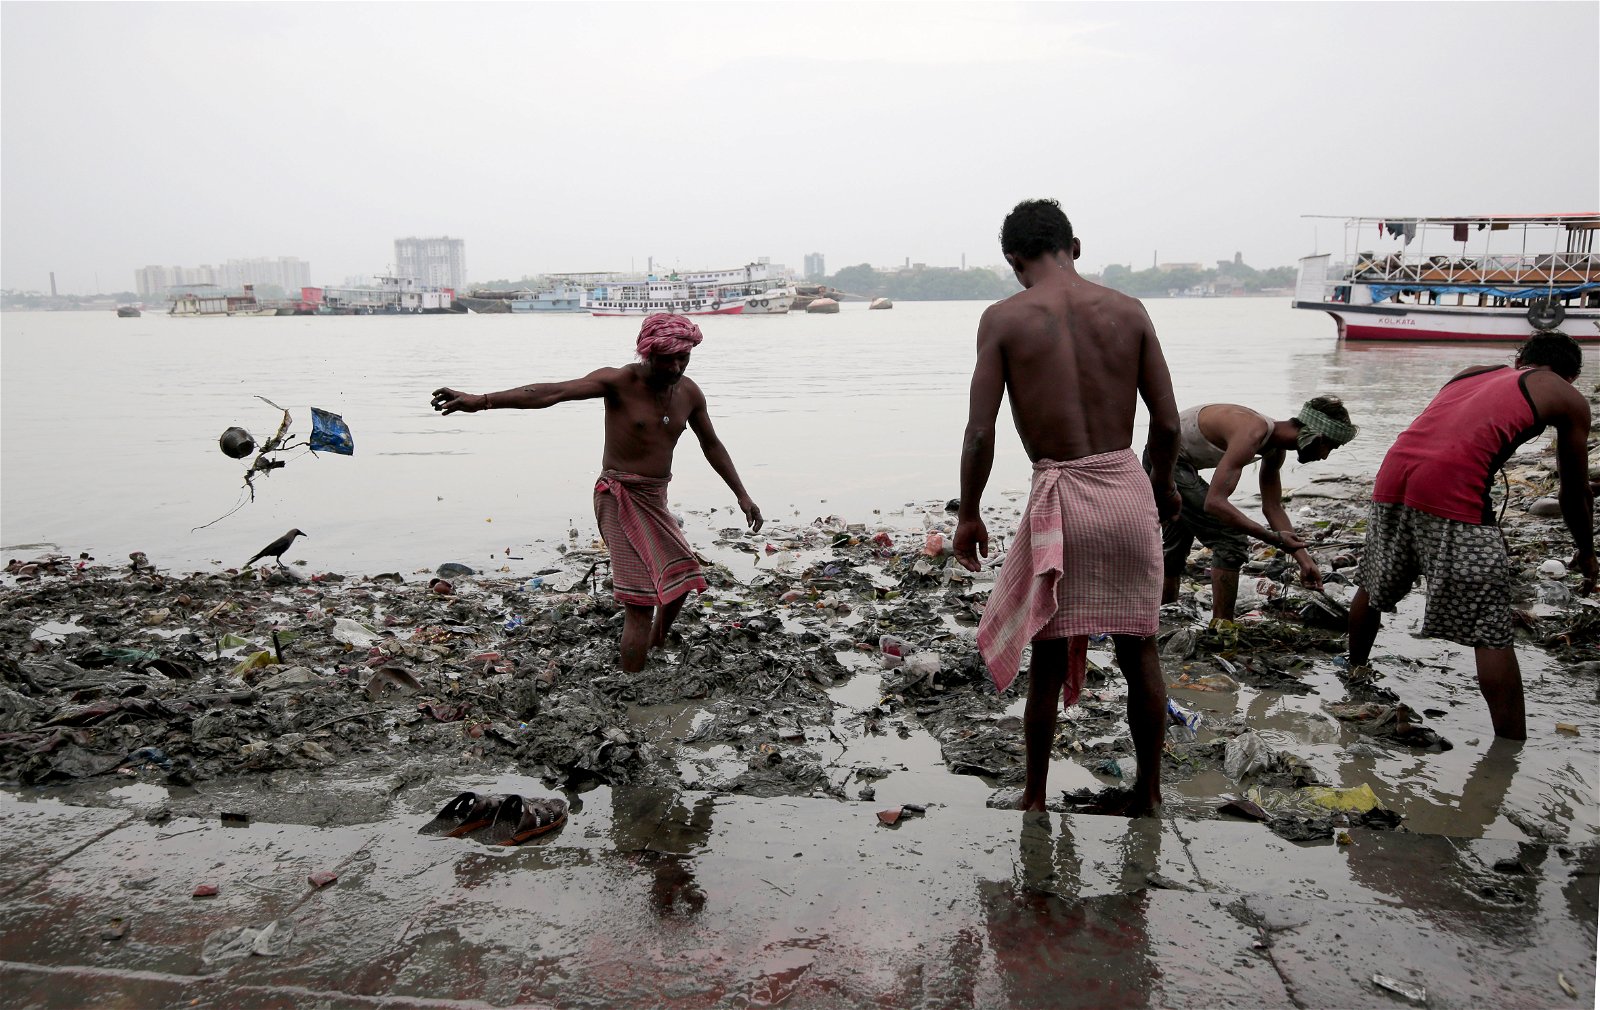 Mensen lopen door met plastic bezaaid water in India, een land waar de watercrisis ernstige gevolgen kent.